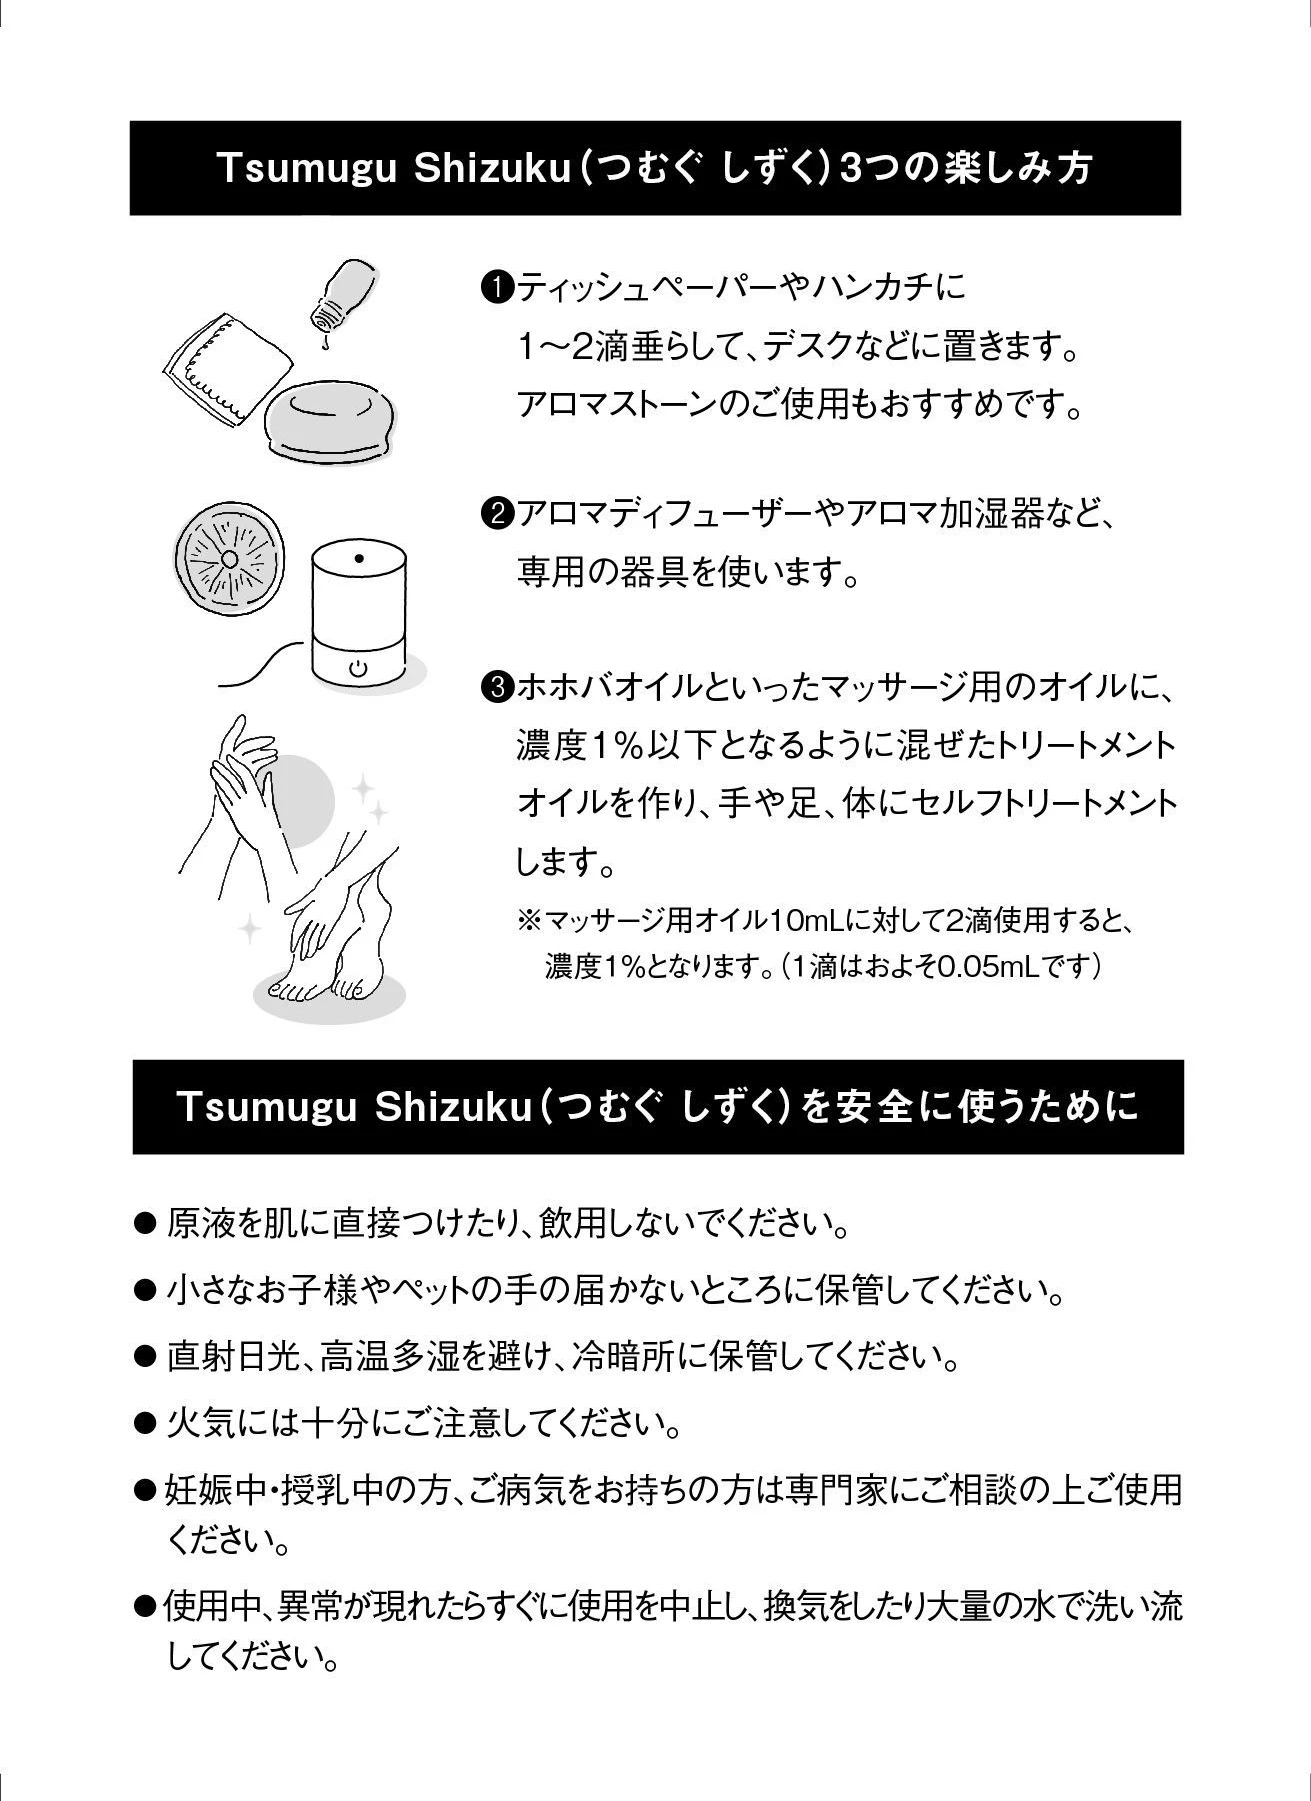 Tsumugu Shizuku 使用方法